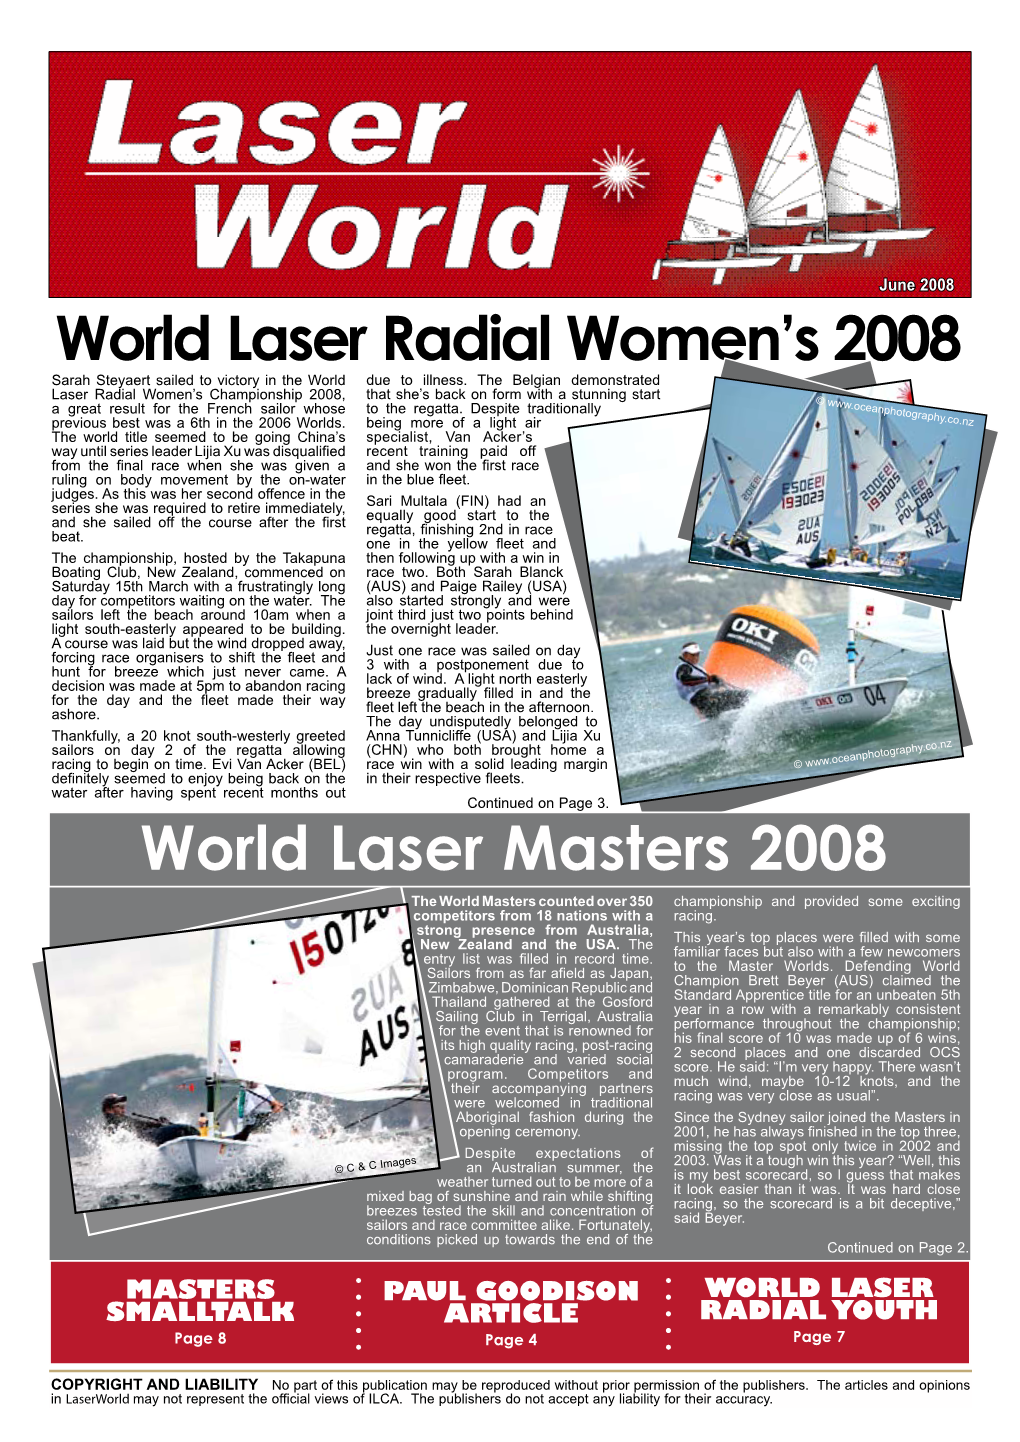 World Laser Radial Women's 2008